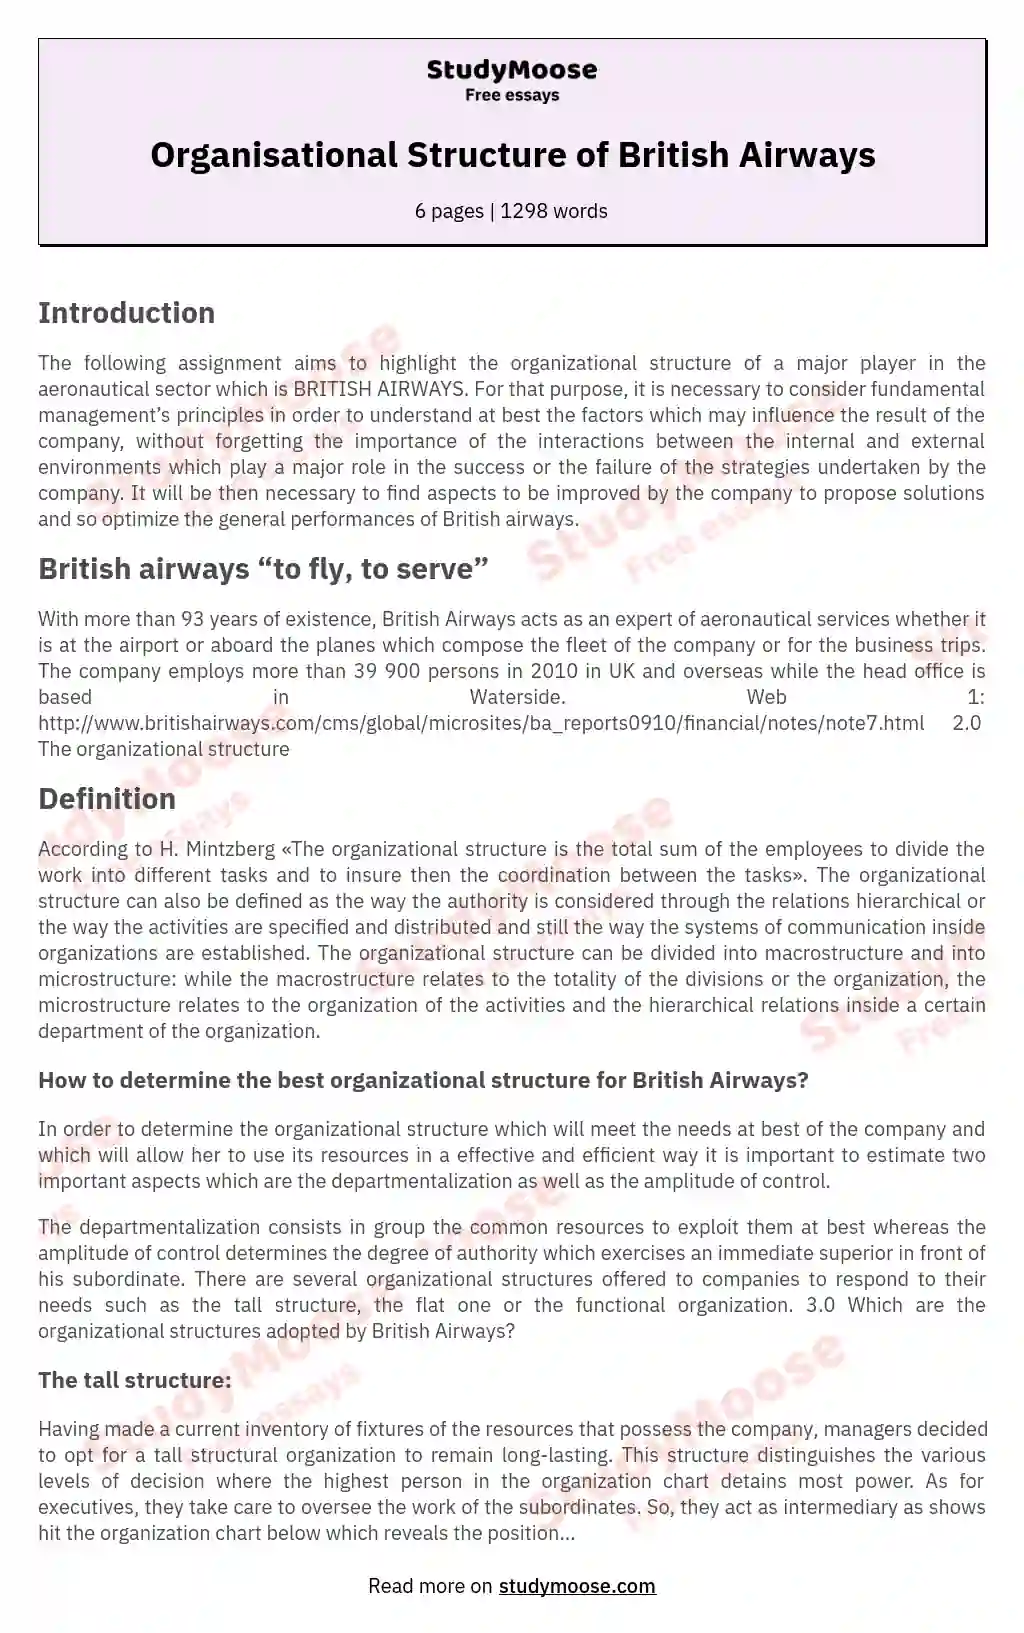 Organisational Structure of British Airways essay